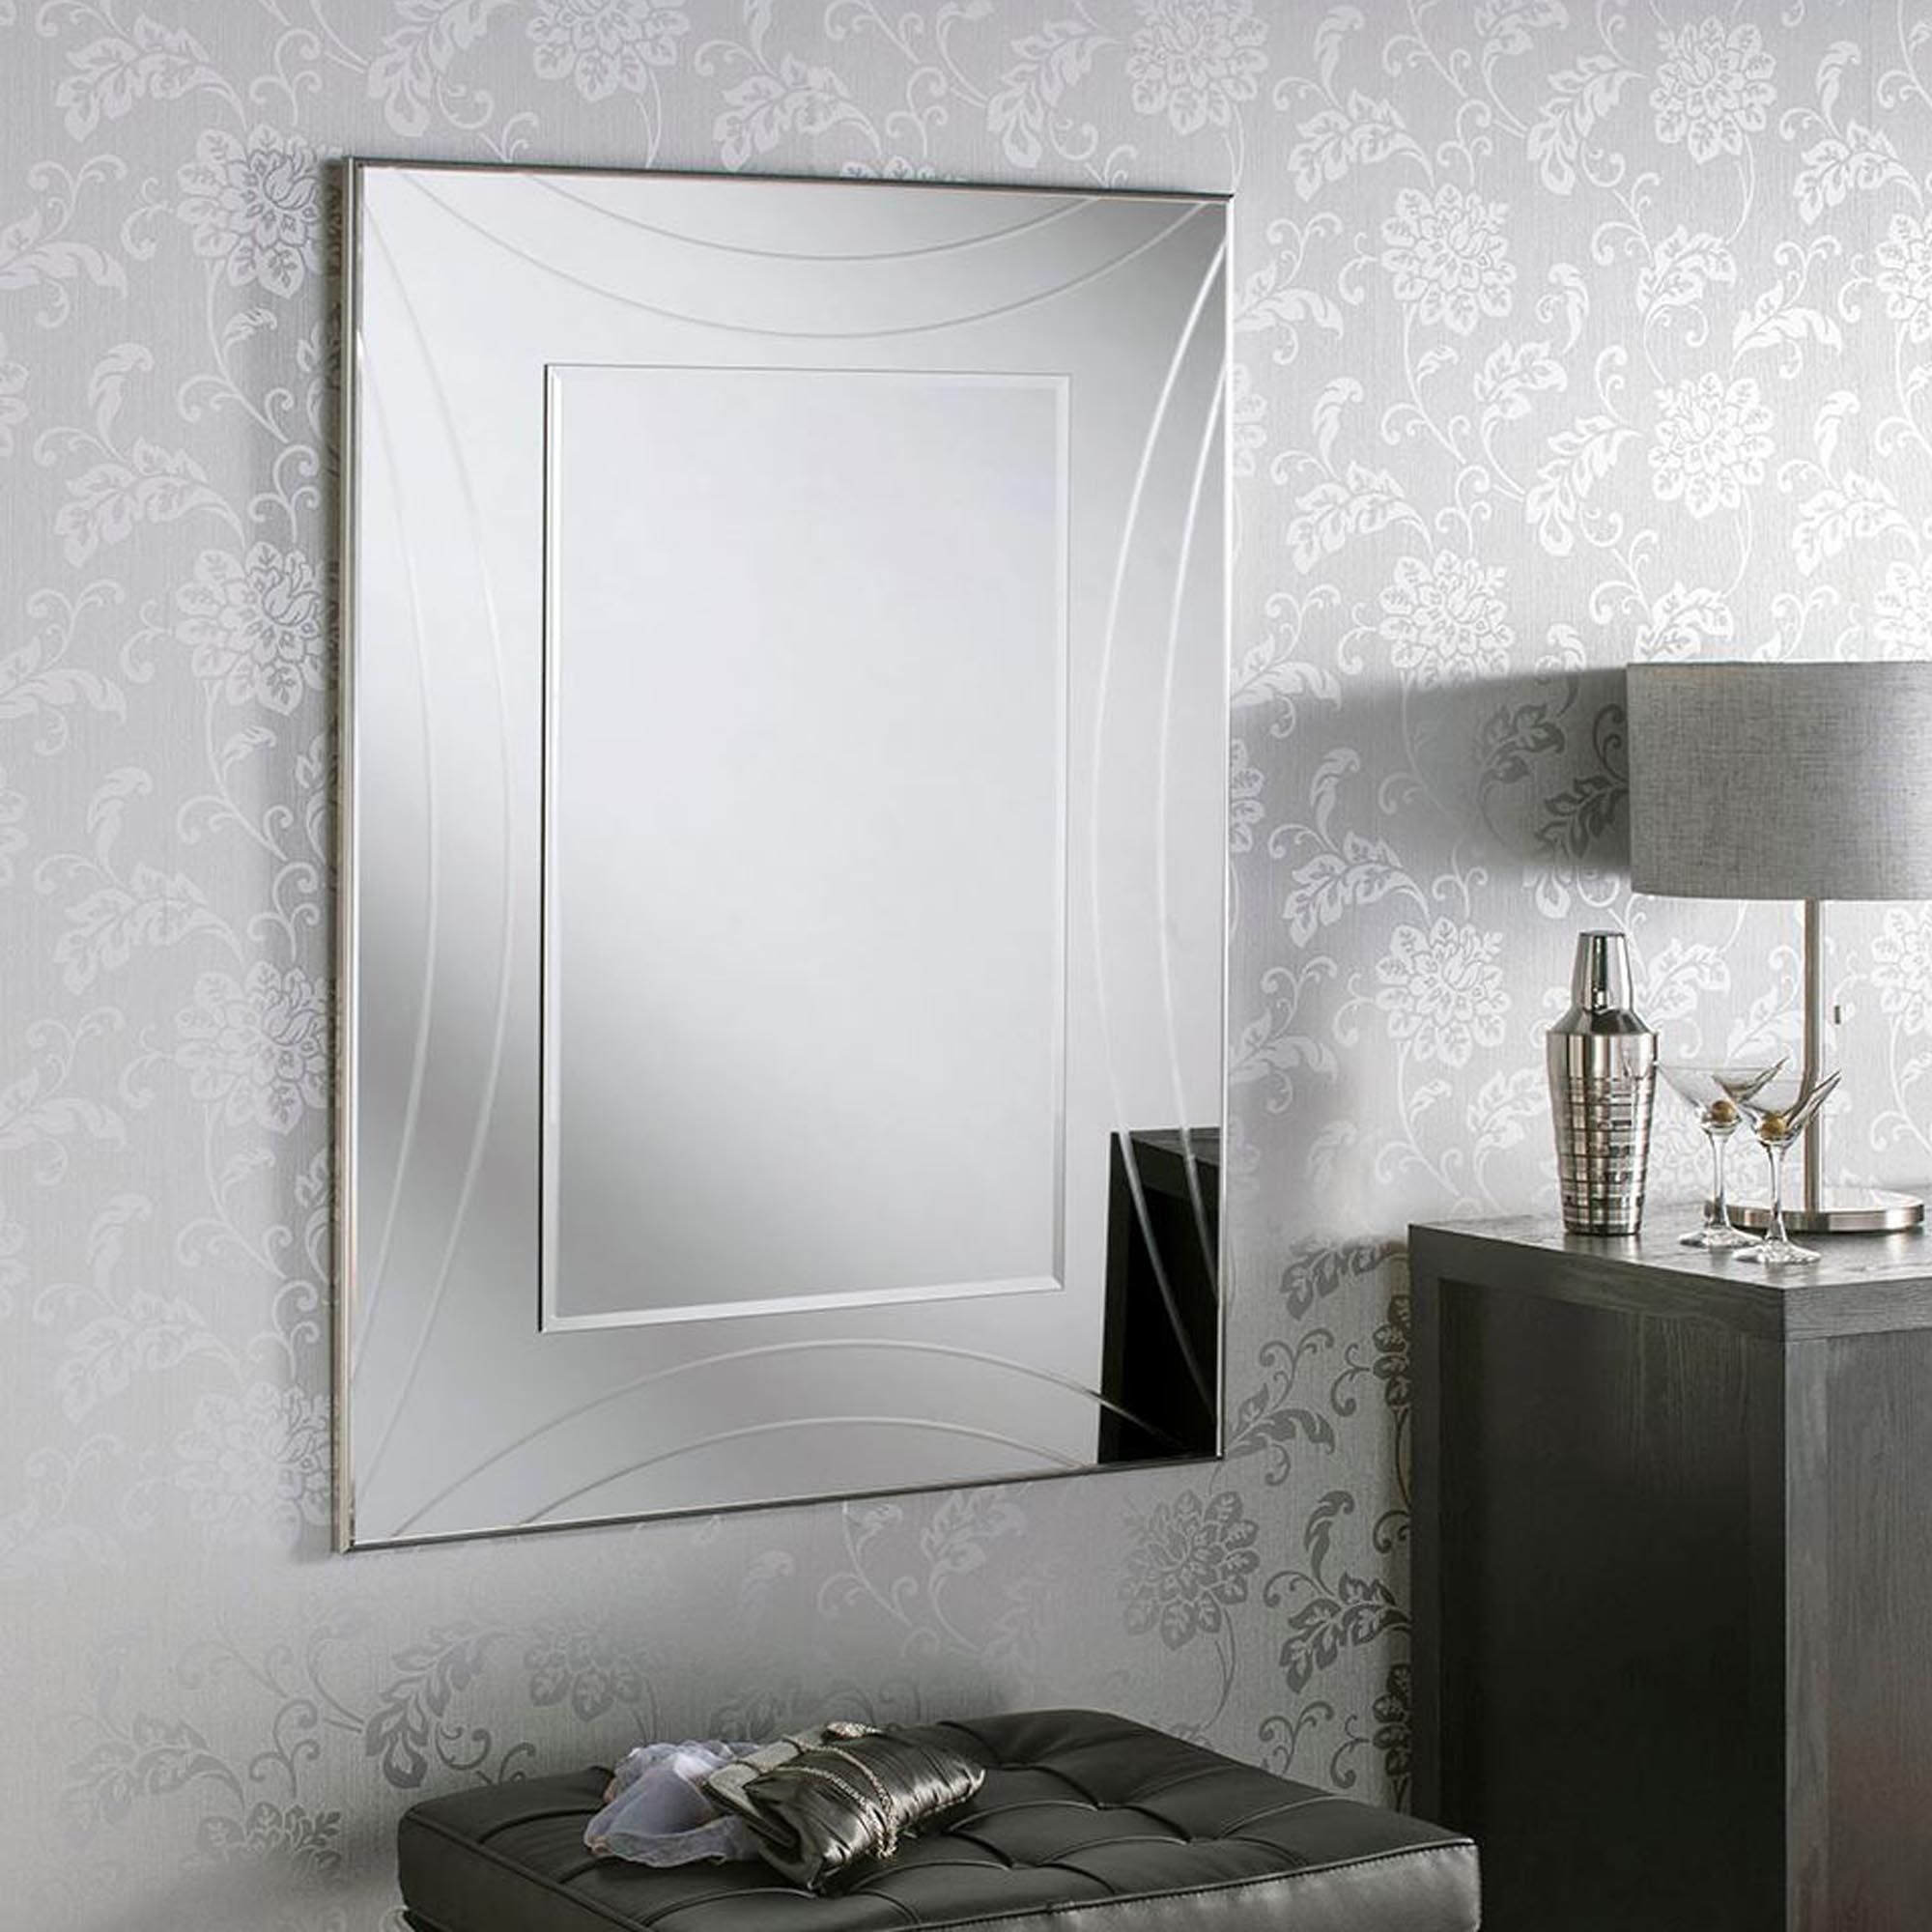 Contemporary Silver Rectangular Wall Mirror | Homesdirect365 With Rectangular Grid Wall Mirrors (View 8 of 15)